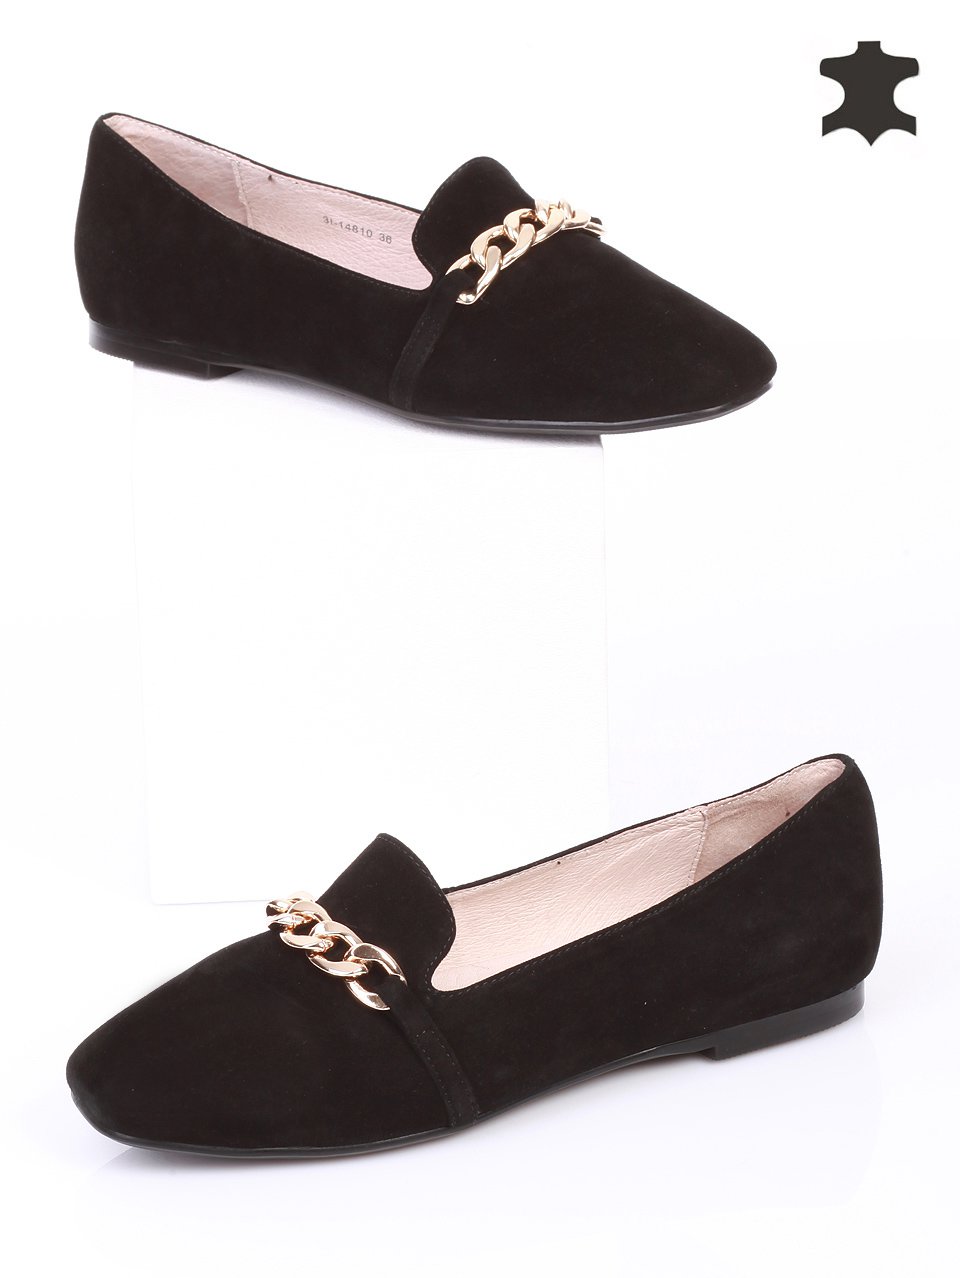 Ежедневни дамски обувки от естествен велур 3I-14810 black